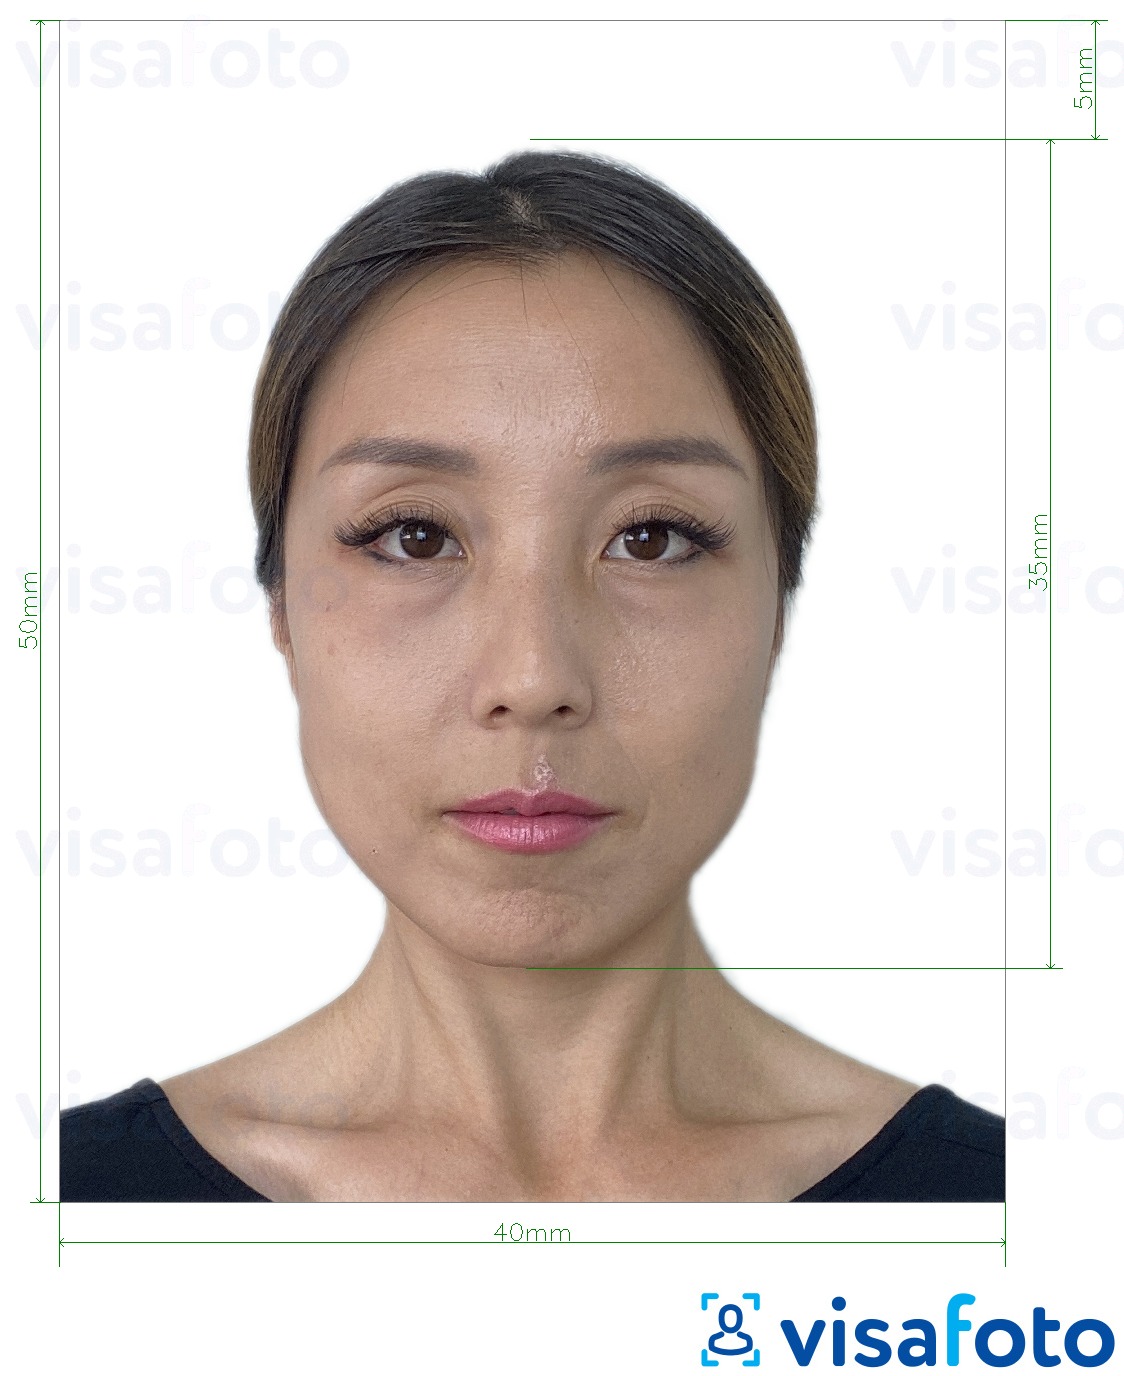 Příklad fotografie Hong Kong Visa 40x50 mm (4x5 cm) s přesnou specifikací velikosti